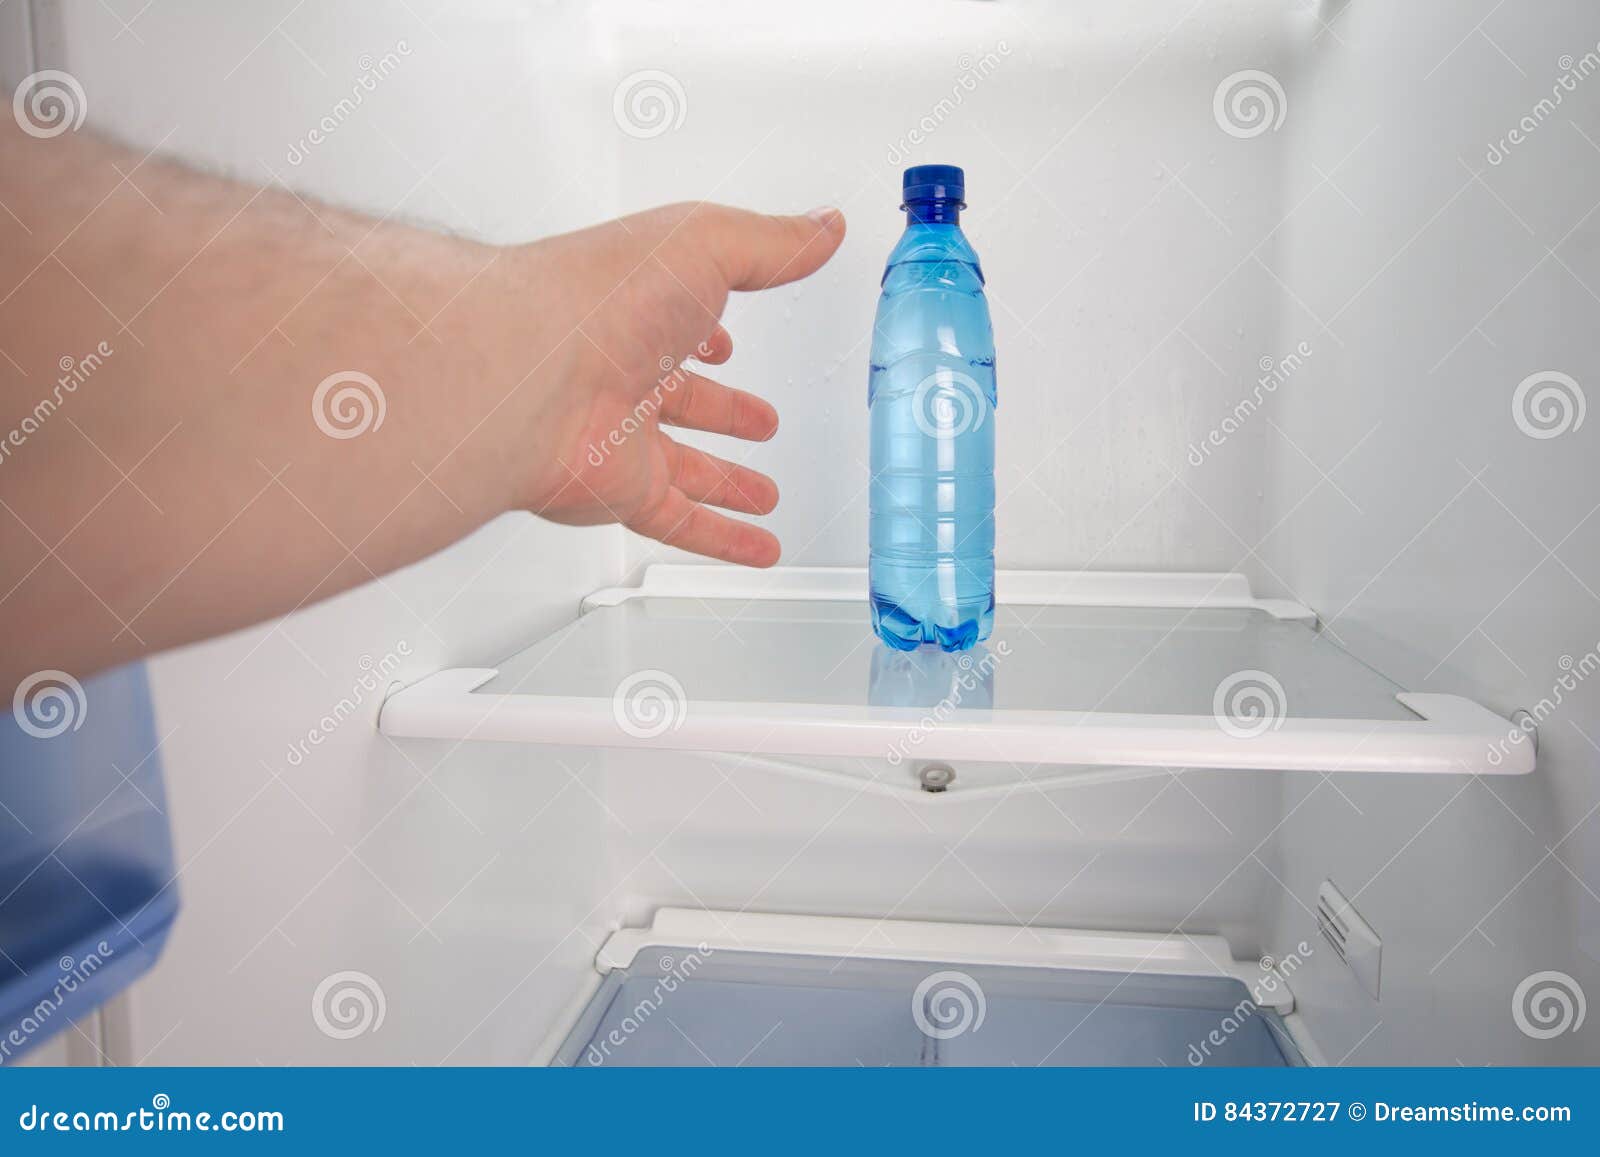 Холодная вода в холодильнике. Холодильник для воды. Холодильник/минералка. Лоток для воды в холодильнике. Холодильник с холодной водой.